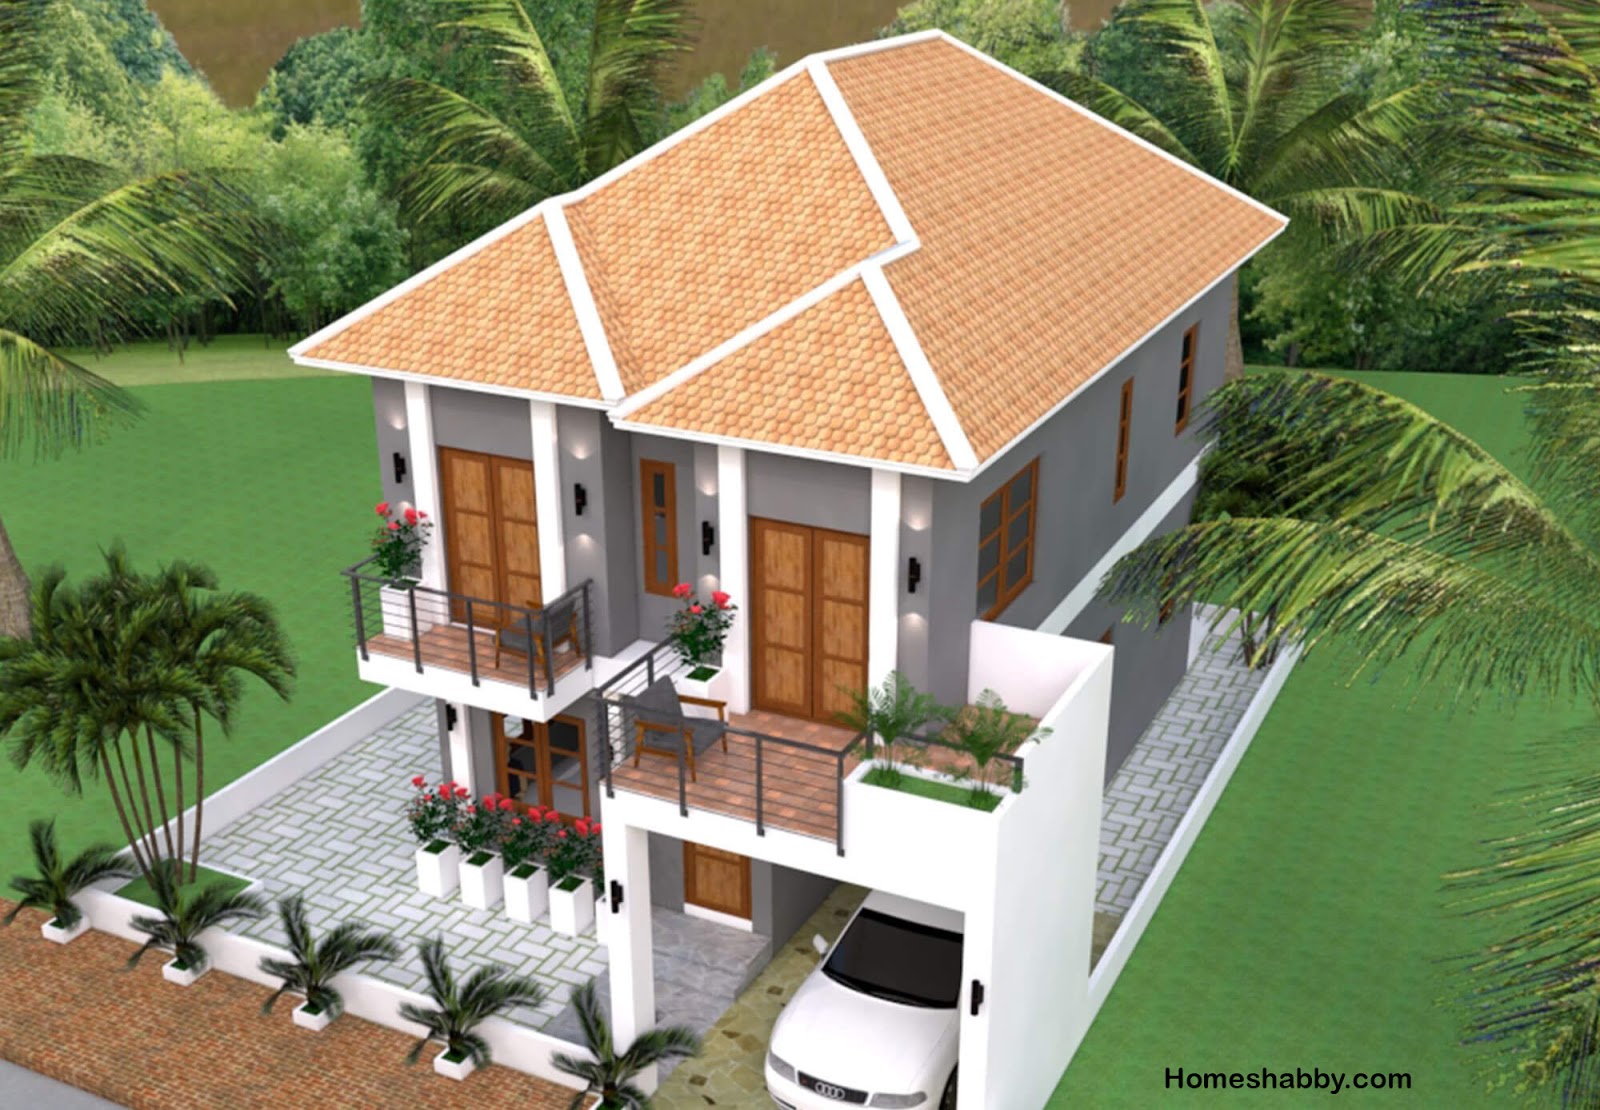 Desain Dan Denah Rumah Minimalis 2 Lantai Cocok Untuk Di Perkampungan Dan Perumahan Perkotaan Homeshabbycom Design Home Plans